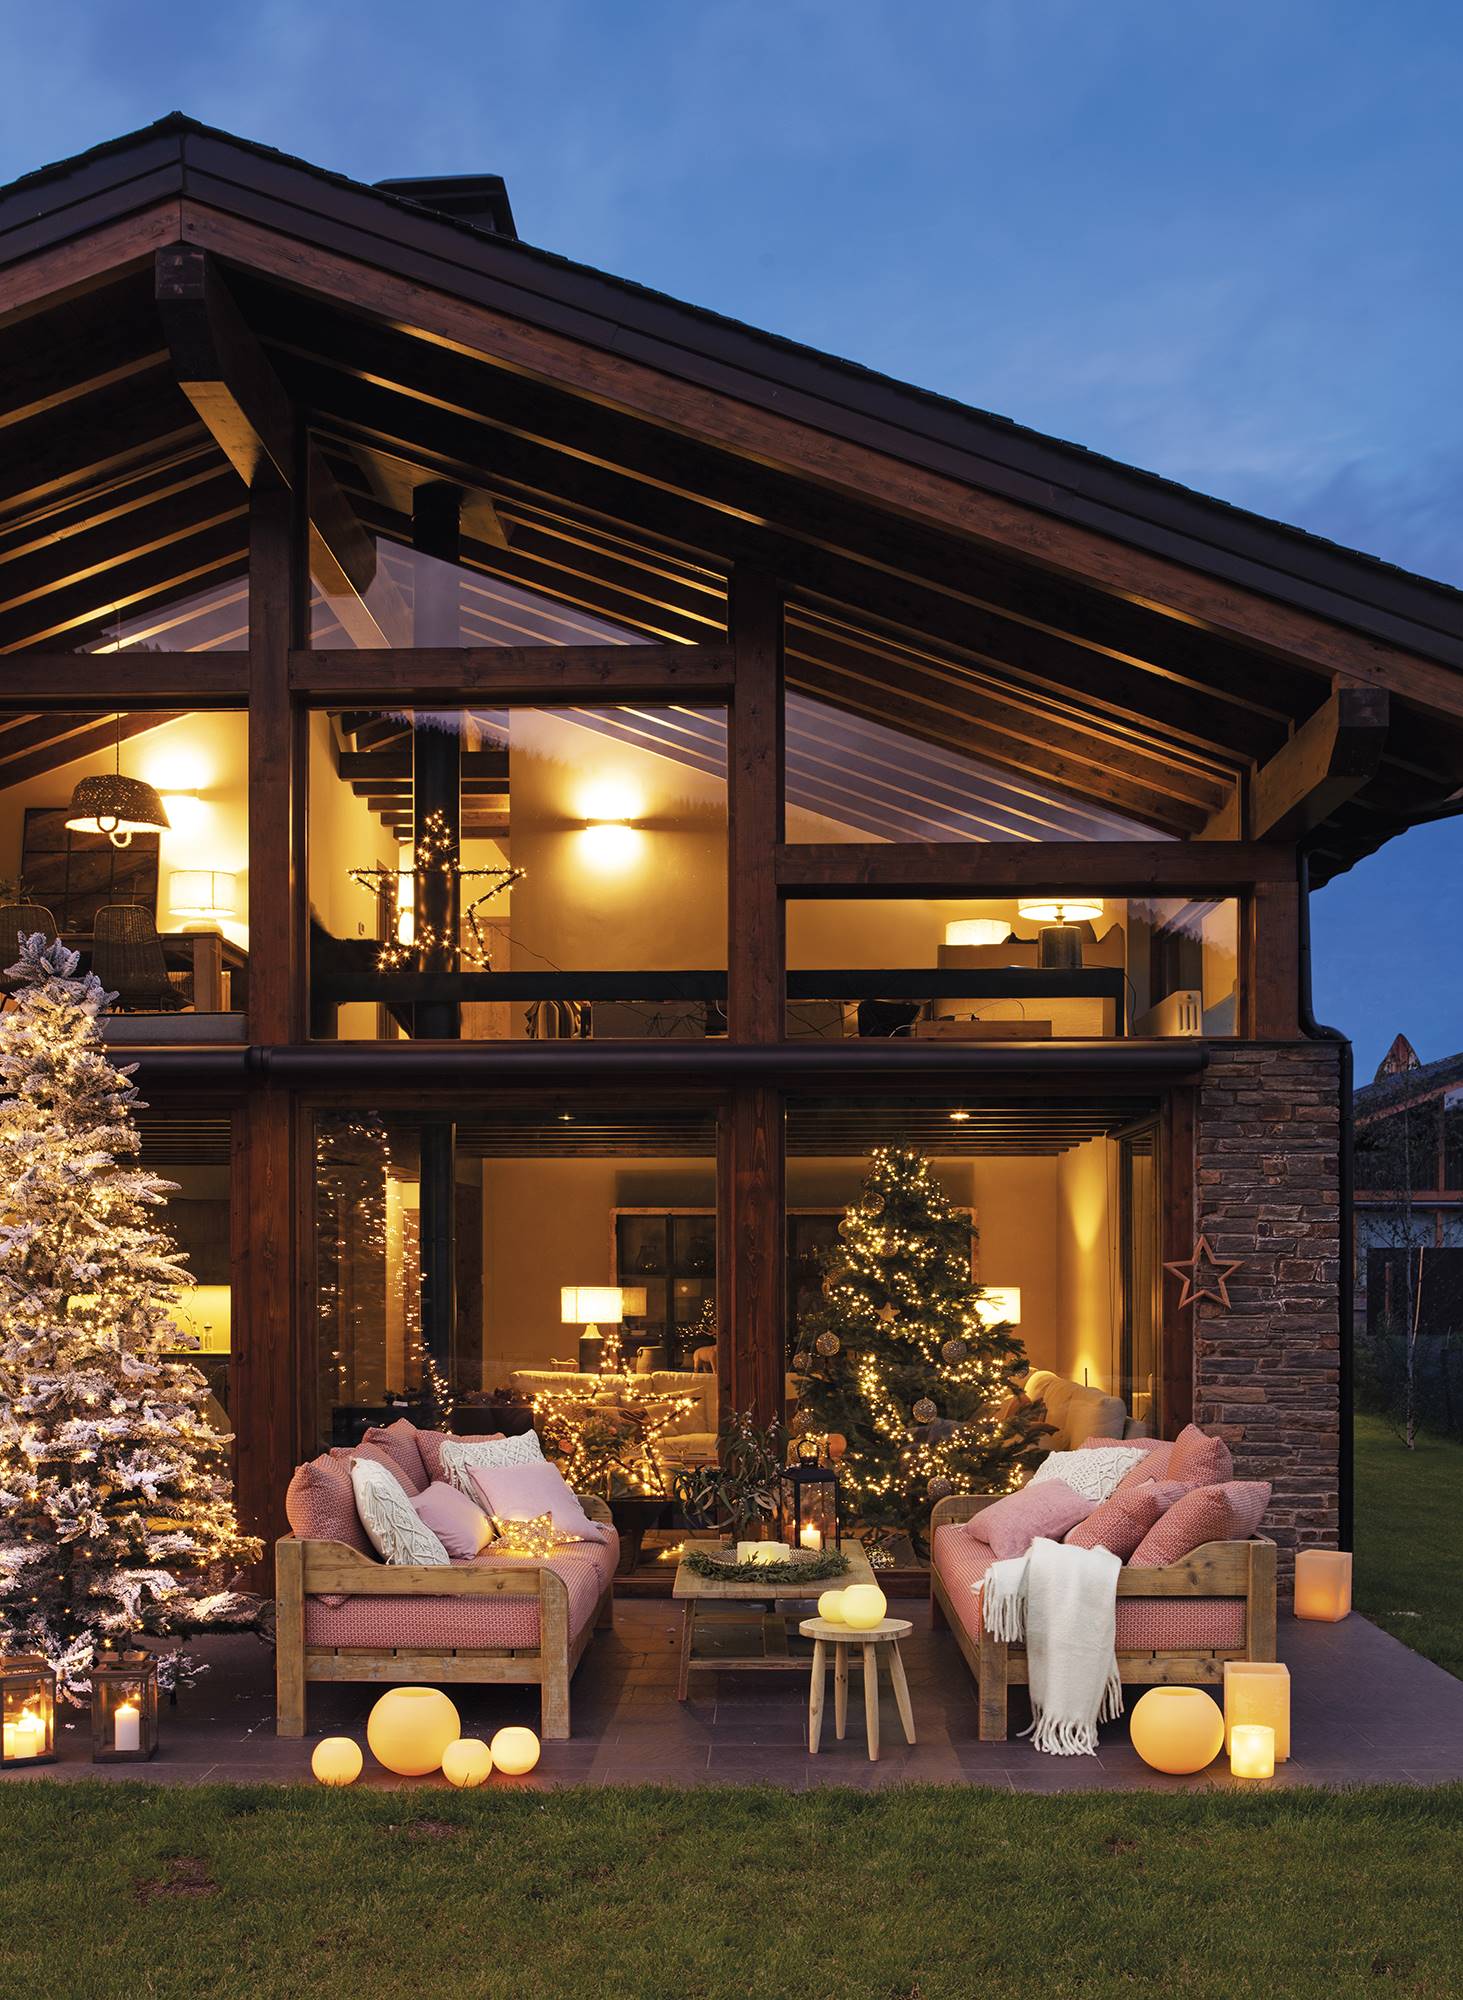 Casa rústica con porche iluminado y decorado de Navidad con guirnaldas, árbol y velas. 